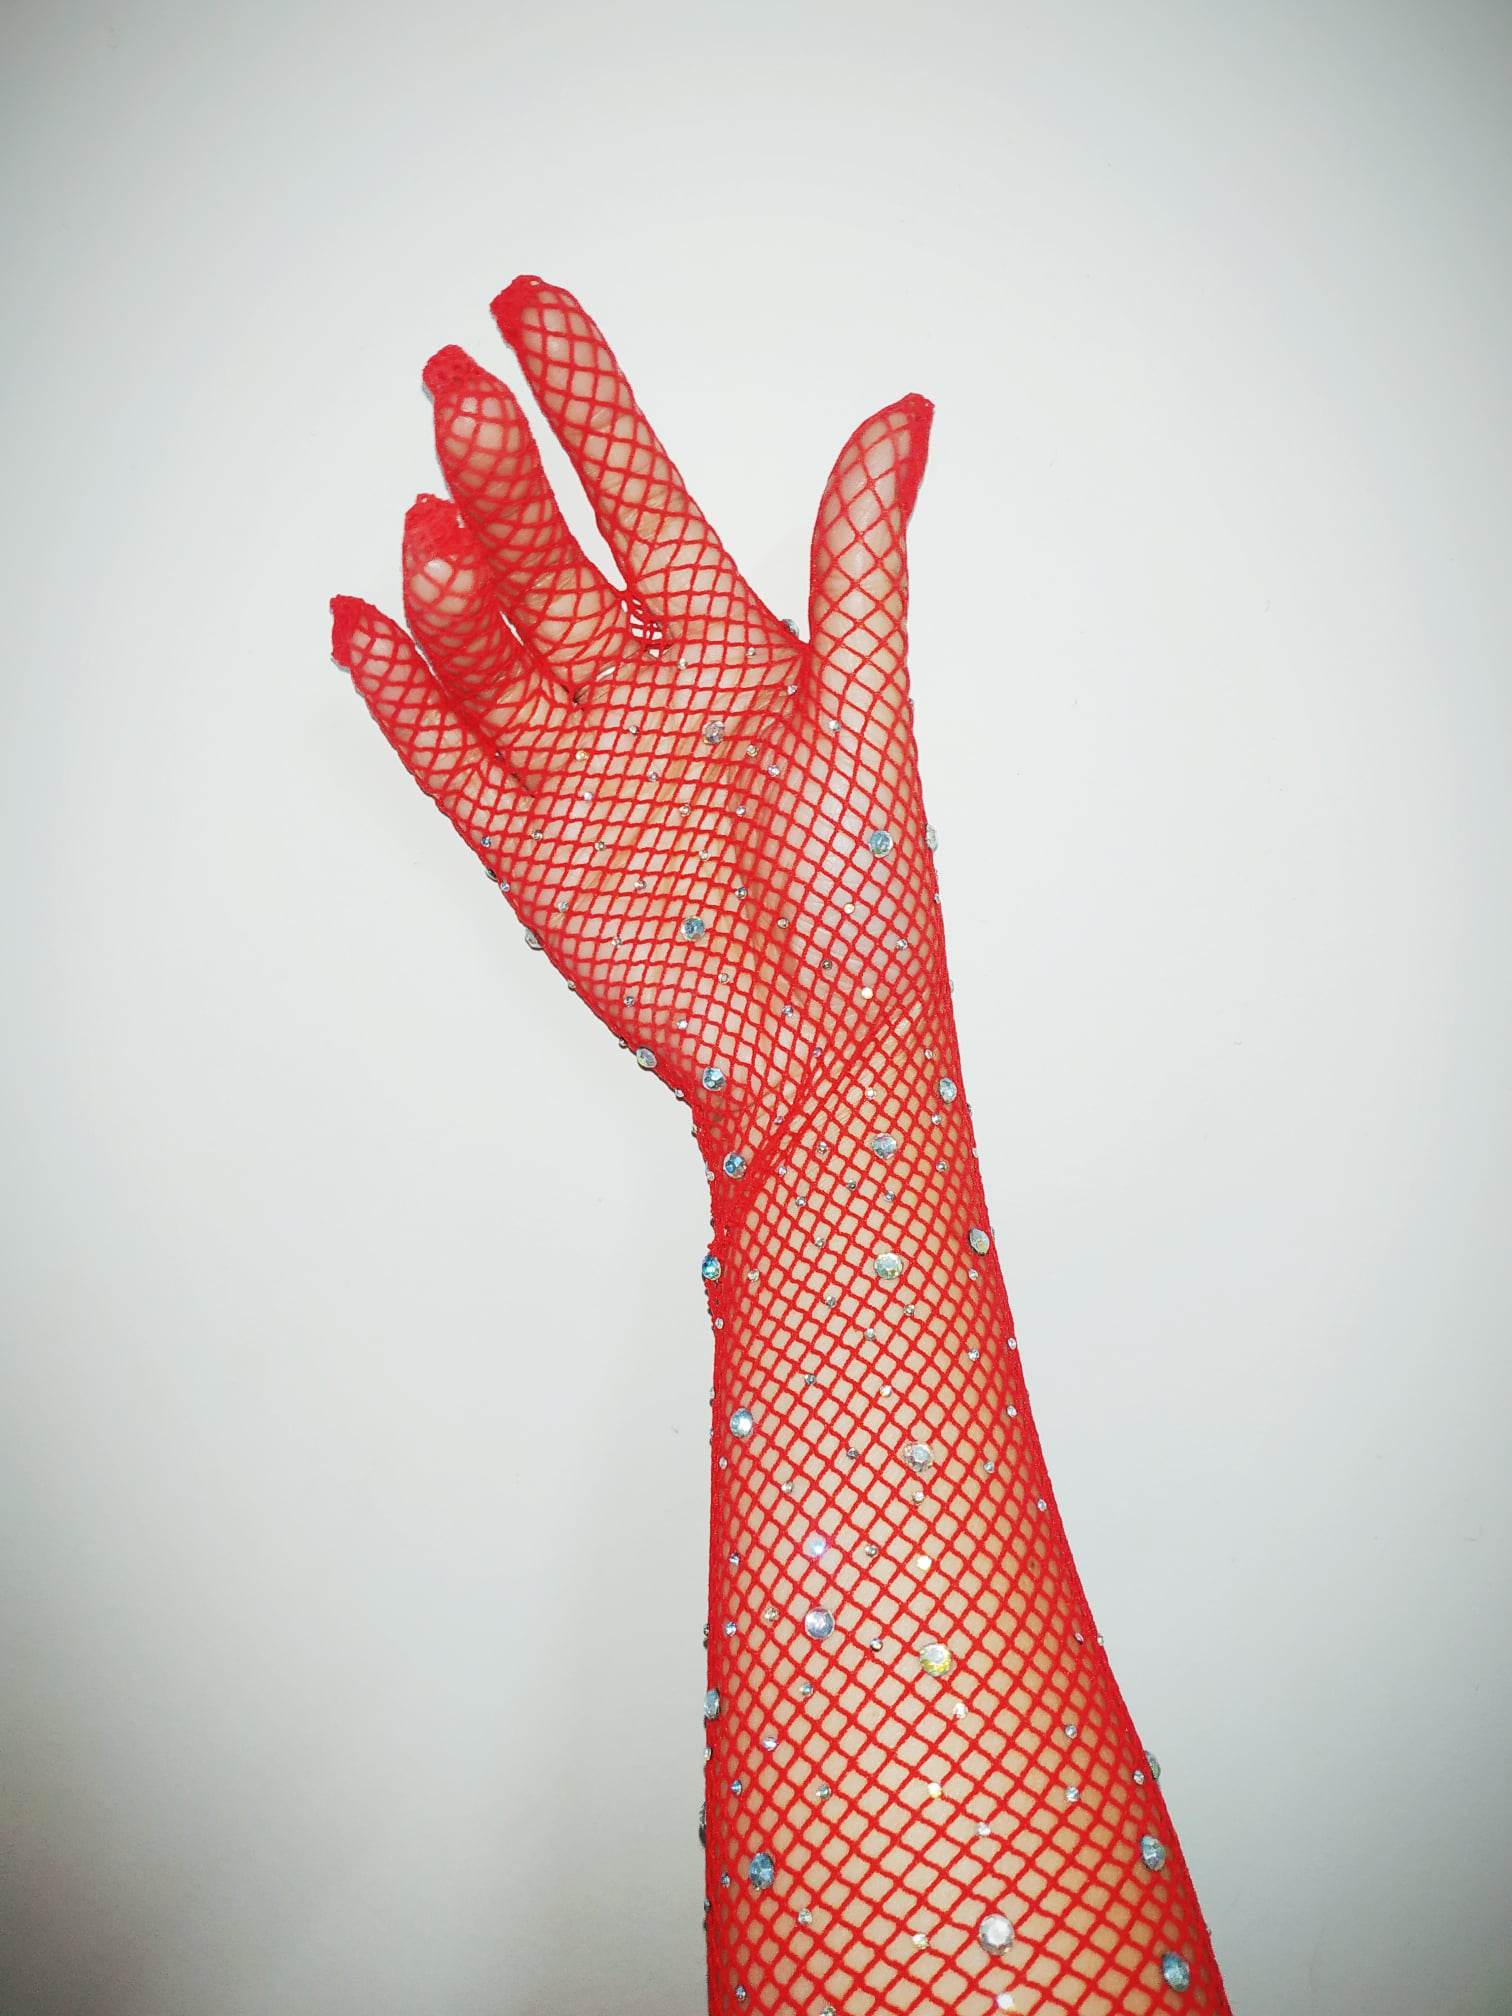 Găng tay sang chảnh màu đỏ dạng lưới đính đá lấp lánh cho Cô dâu và Dạ hội, đi tiệc, sự kiện, lễ hội, đạo cụ chụp ảnh, studio MS: 44839